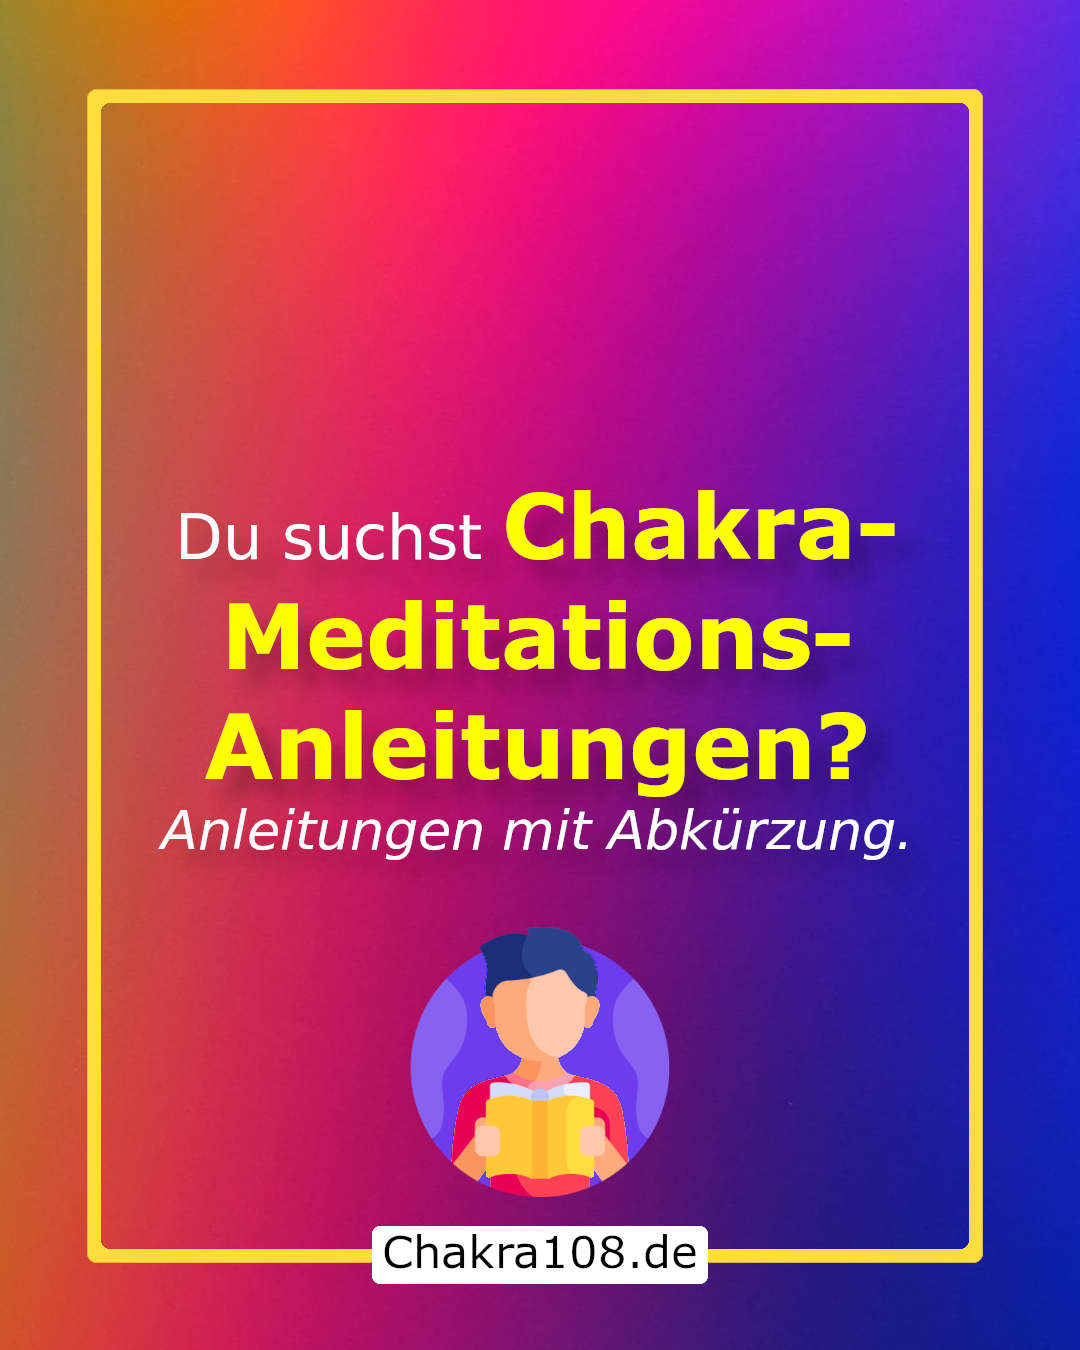 Chakra-Meditations-Anleitungen mit Abkürzung